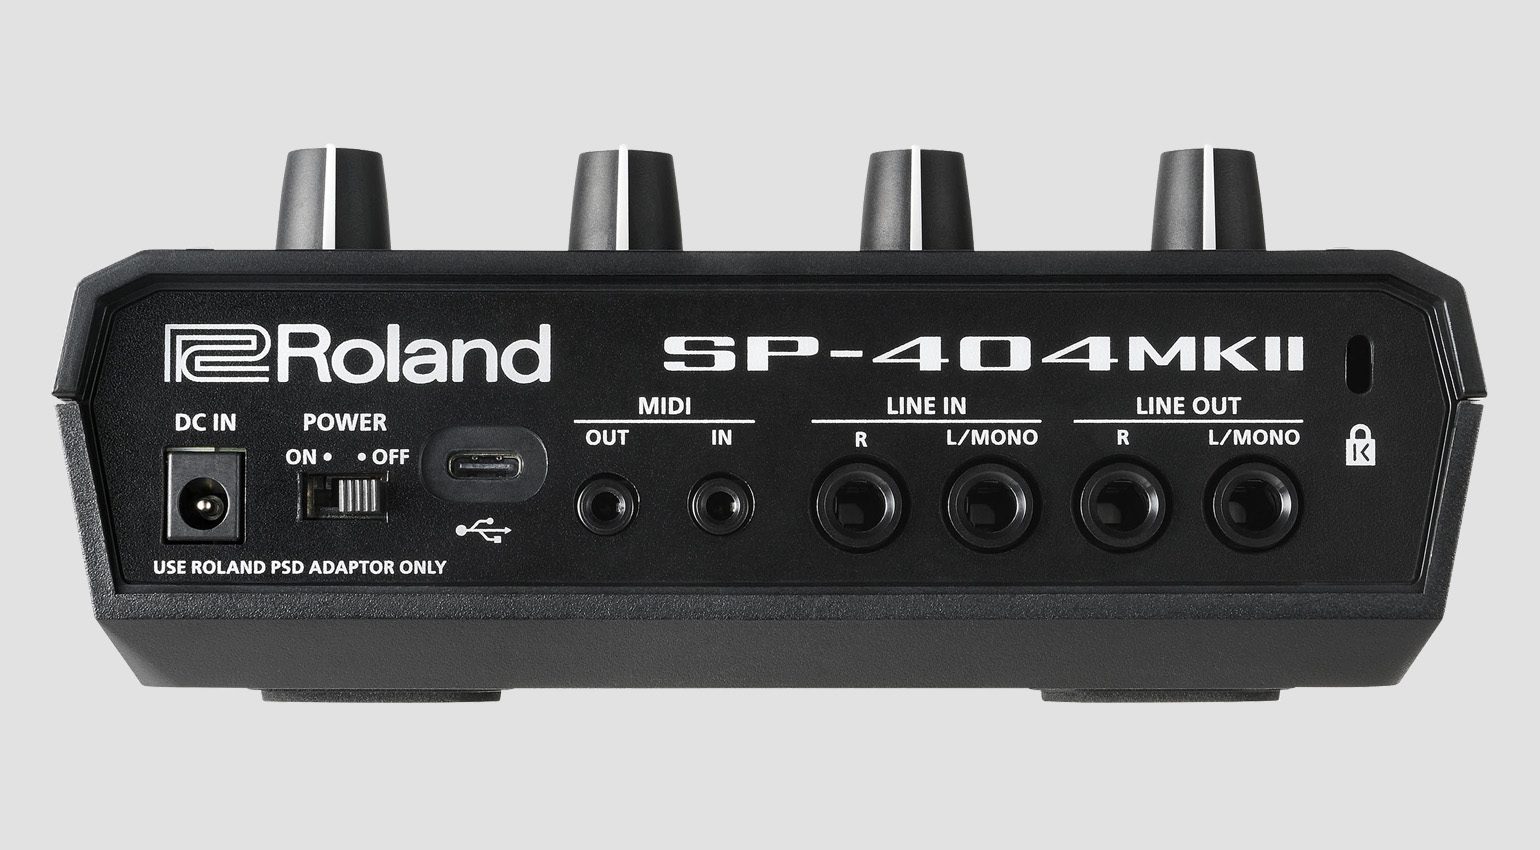 激安買う Roland サンプラー SP404mk2 MKII SP-404 DTM/DAW